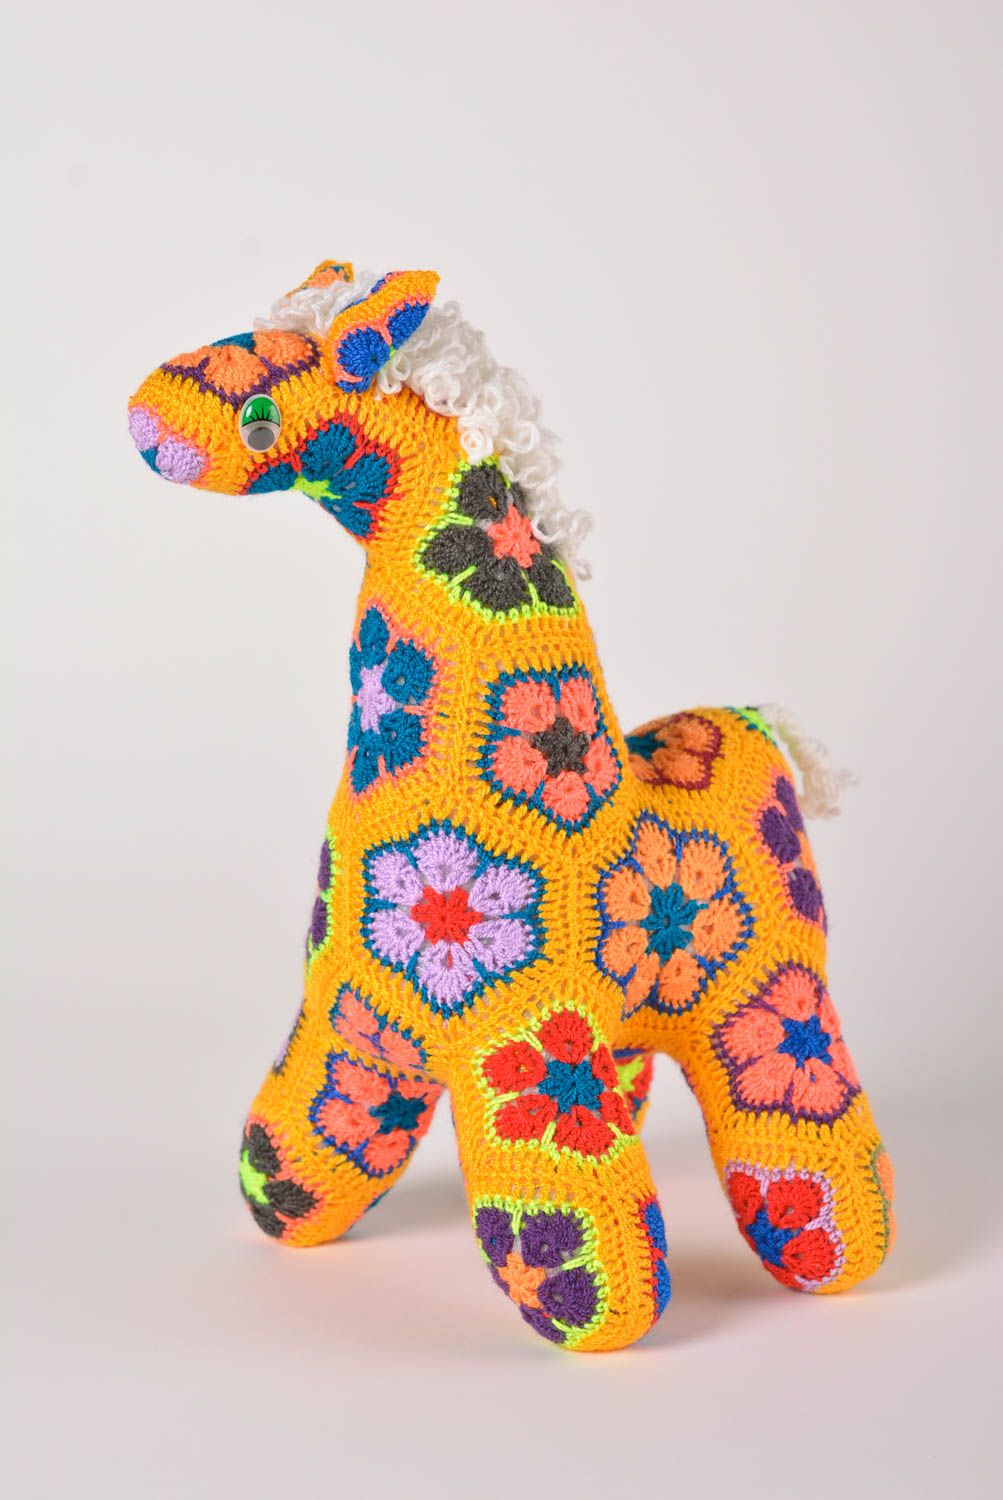 Handmade Spielzeug Giraffe Kuscheltier gehäkelt Geschenk Idee bunt gelb groß foto 1